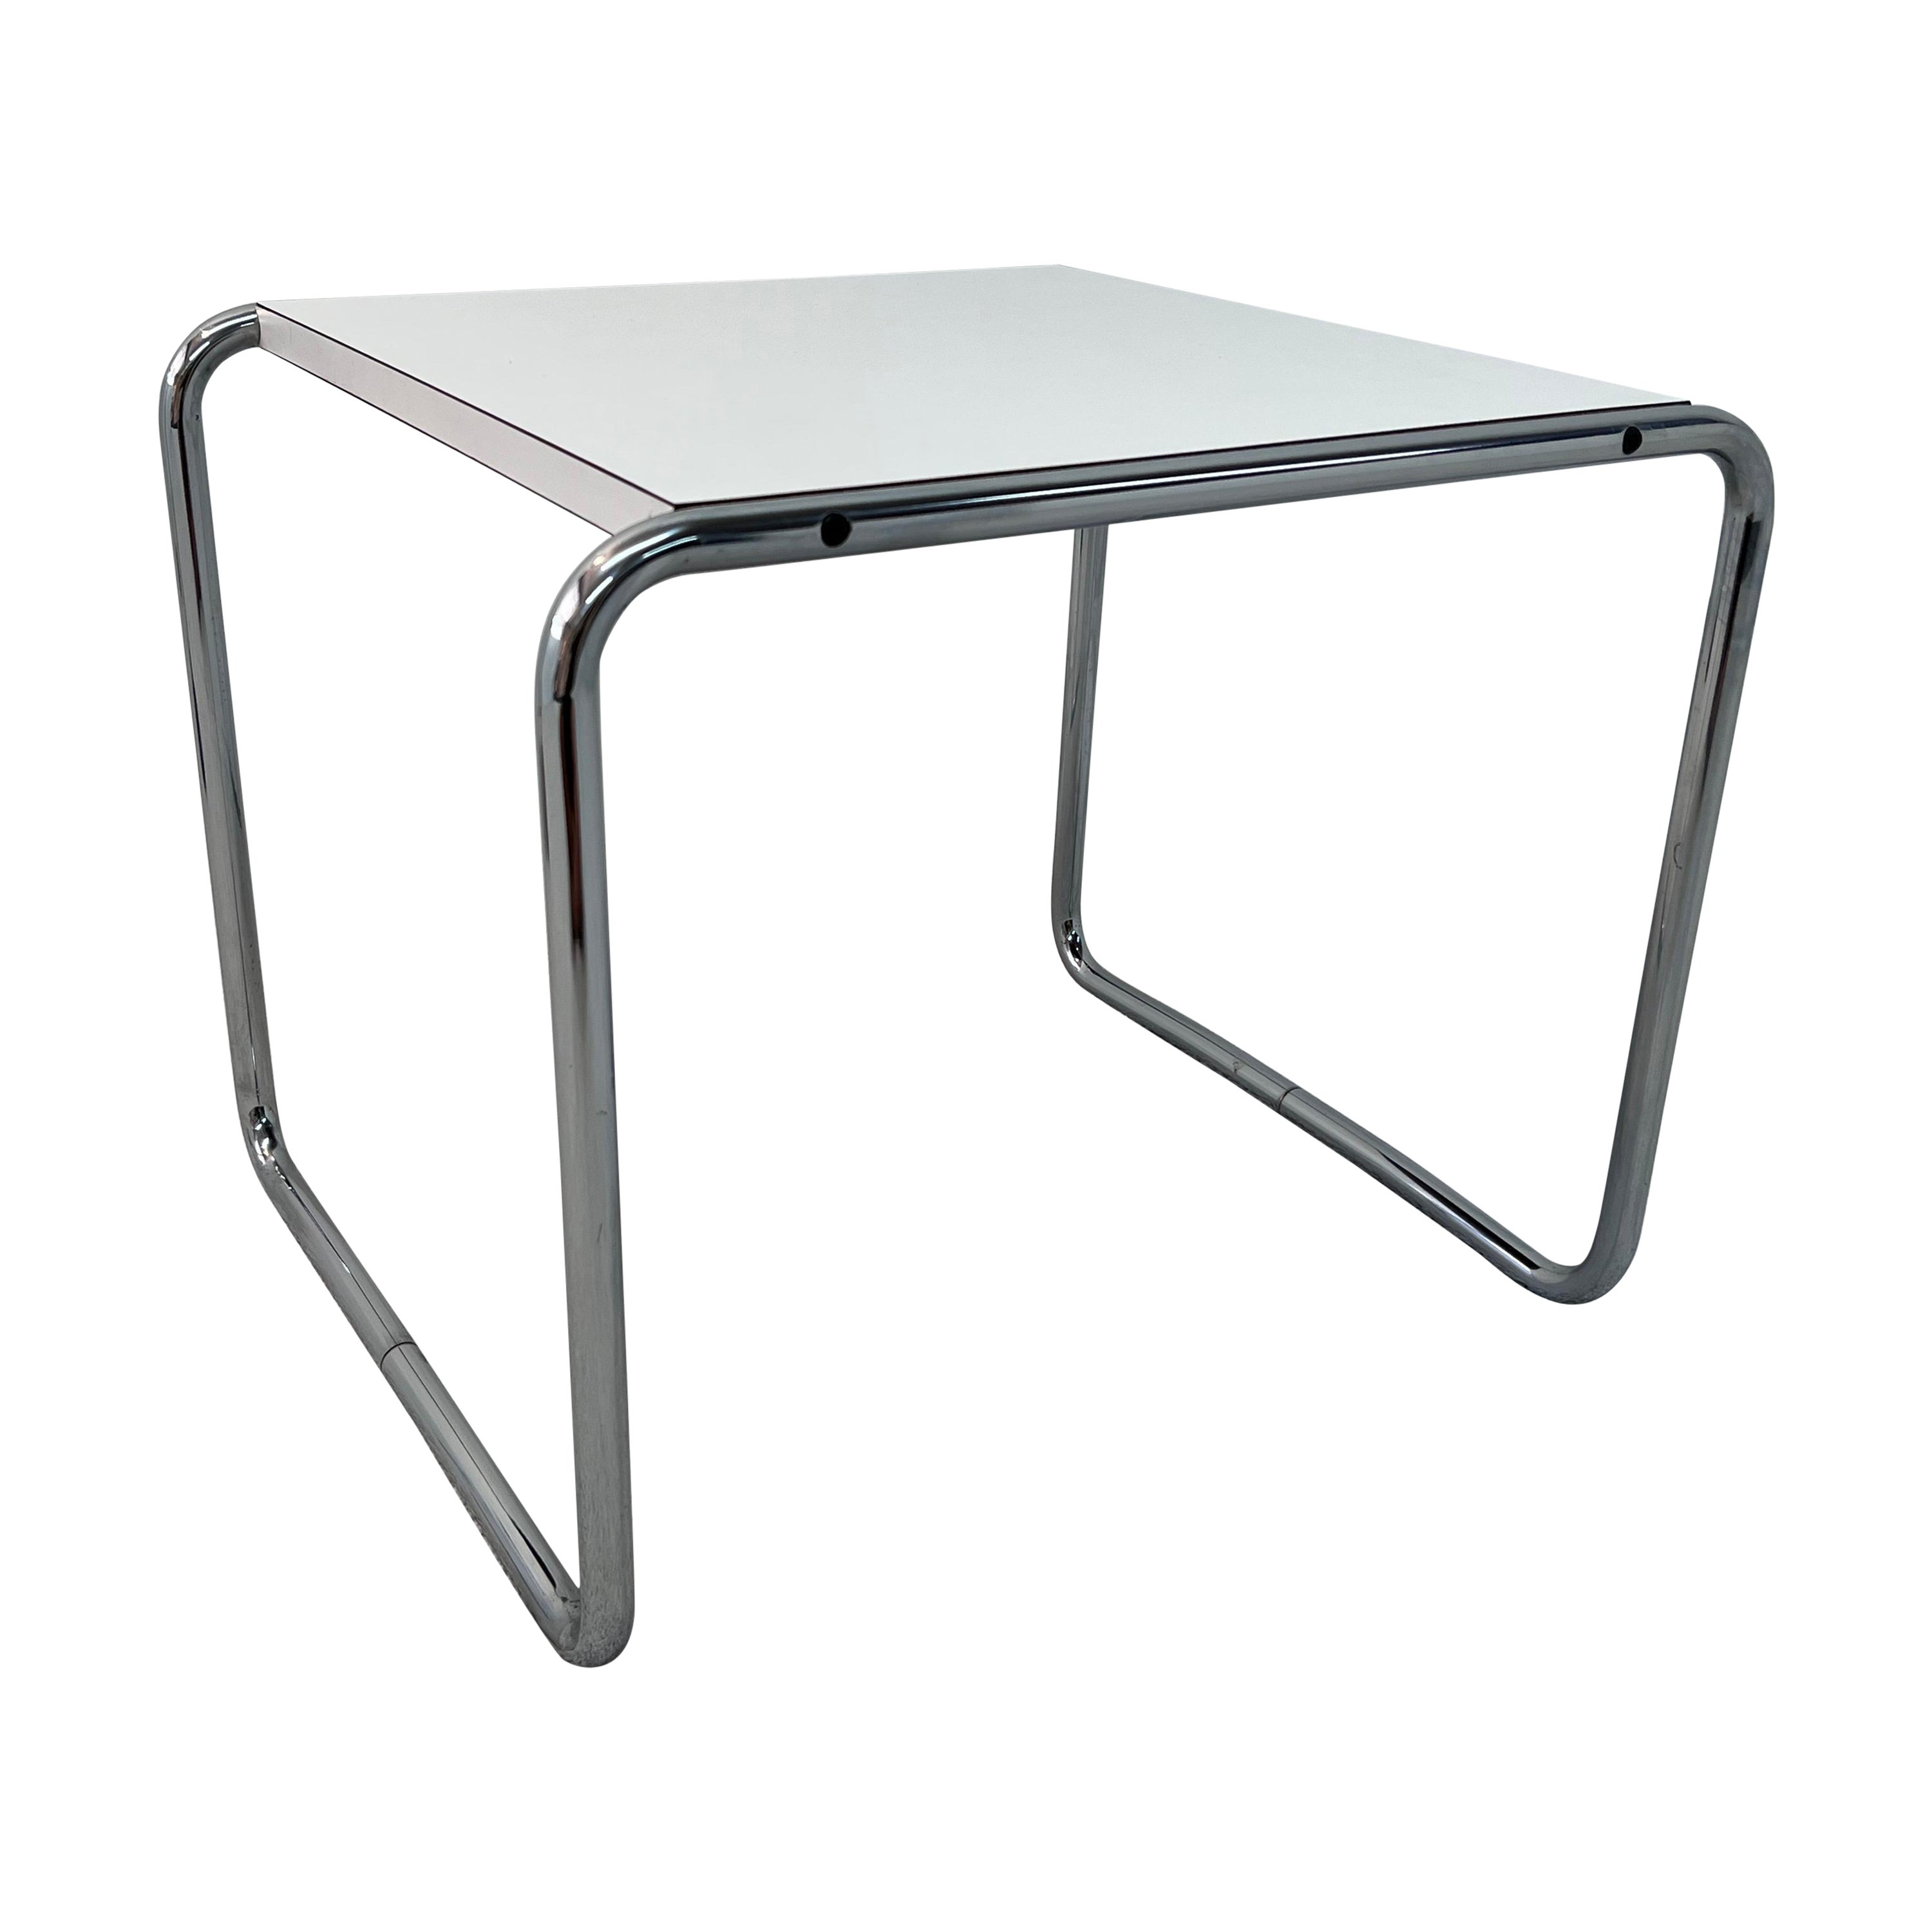 Marcel Breuer “Laccio” Chrome and Laminate Side Tables, 1960s